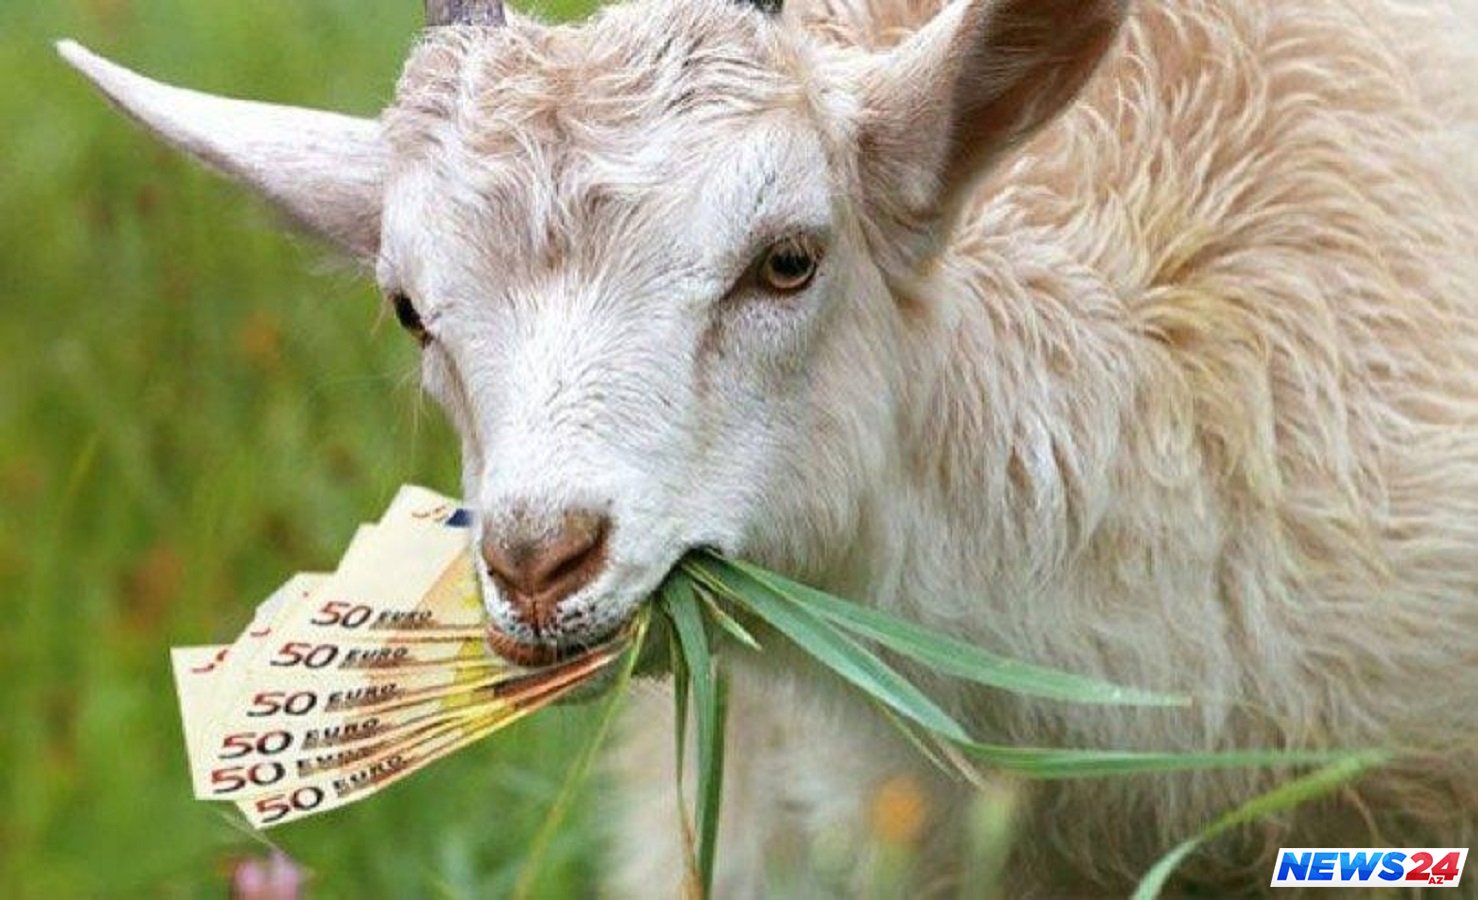 Ev almaq üçün yığdığı 20 min pulu keçi yedi - VİDEO 